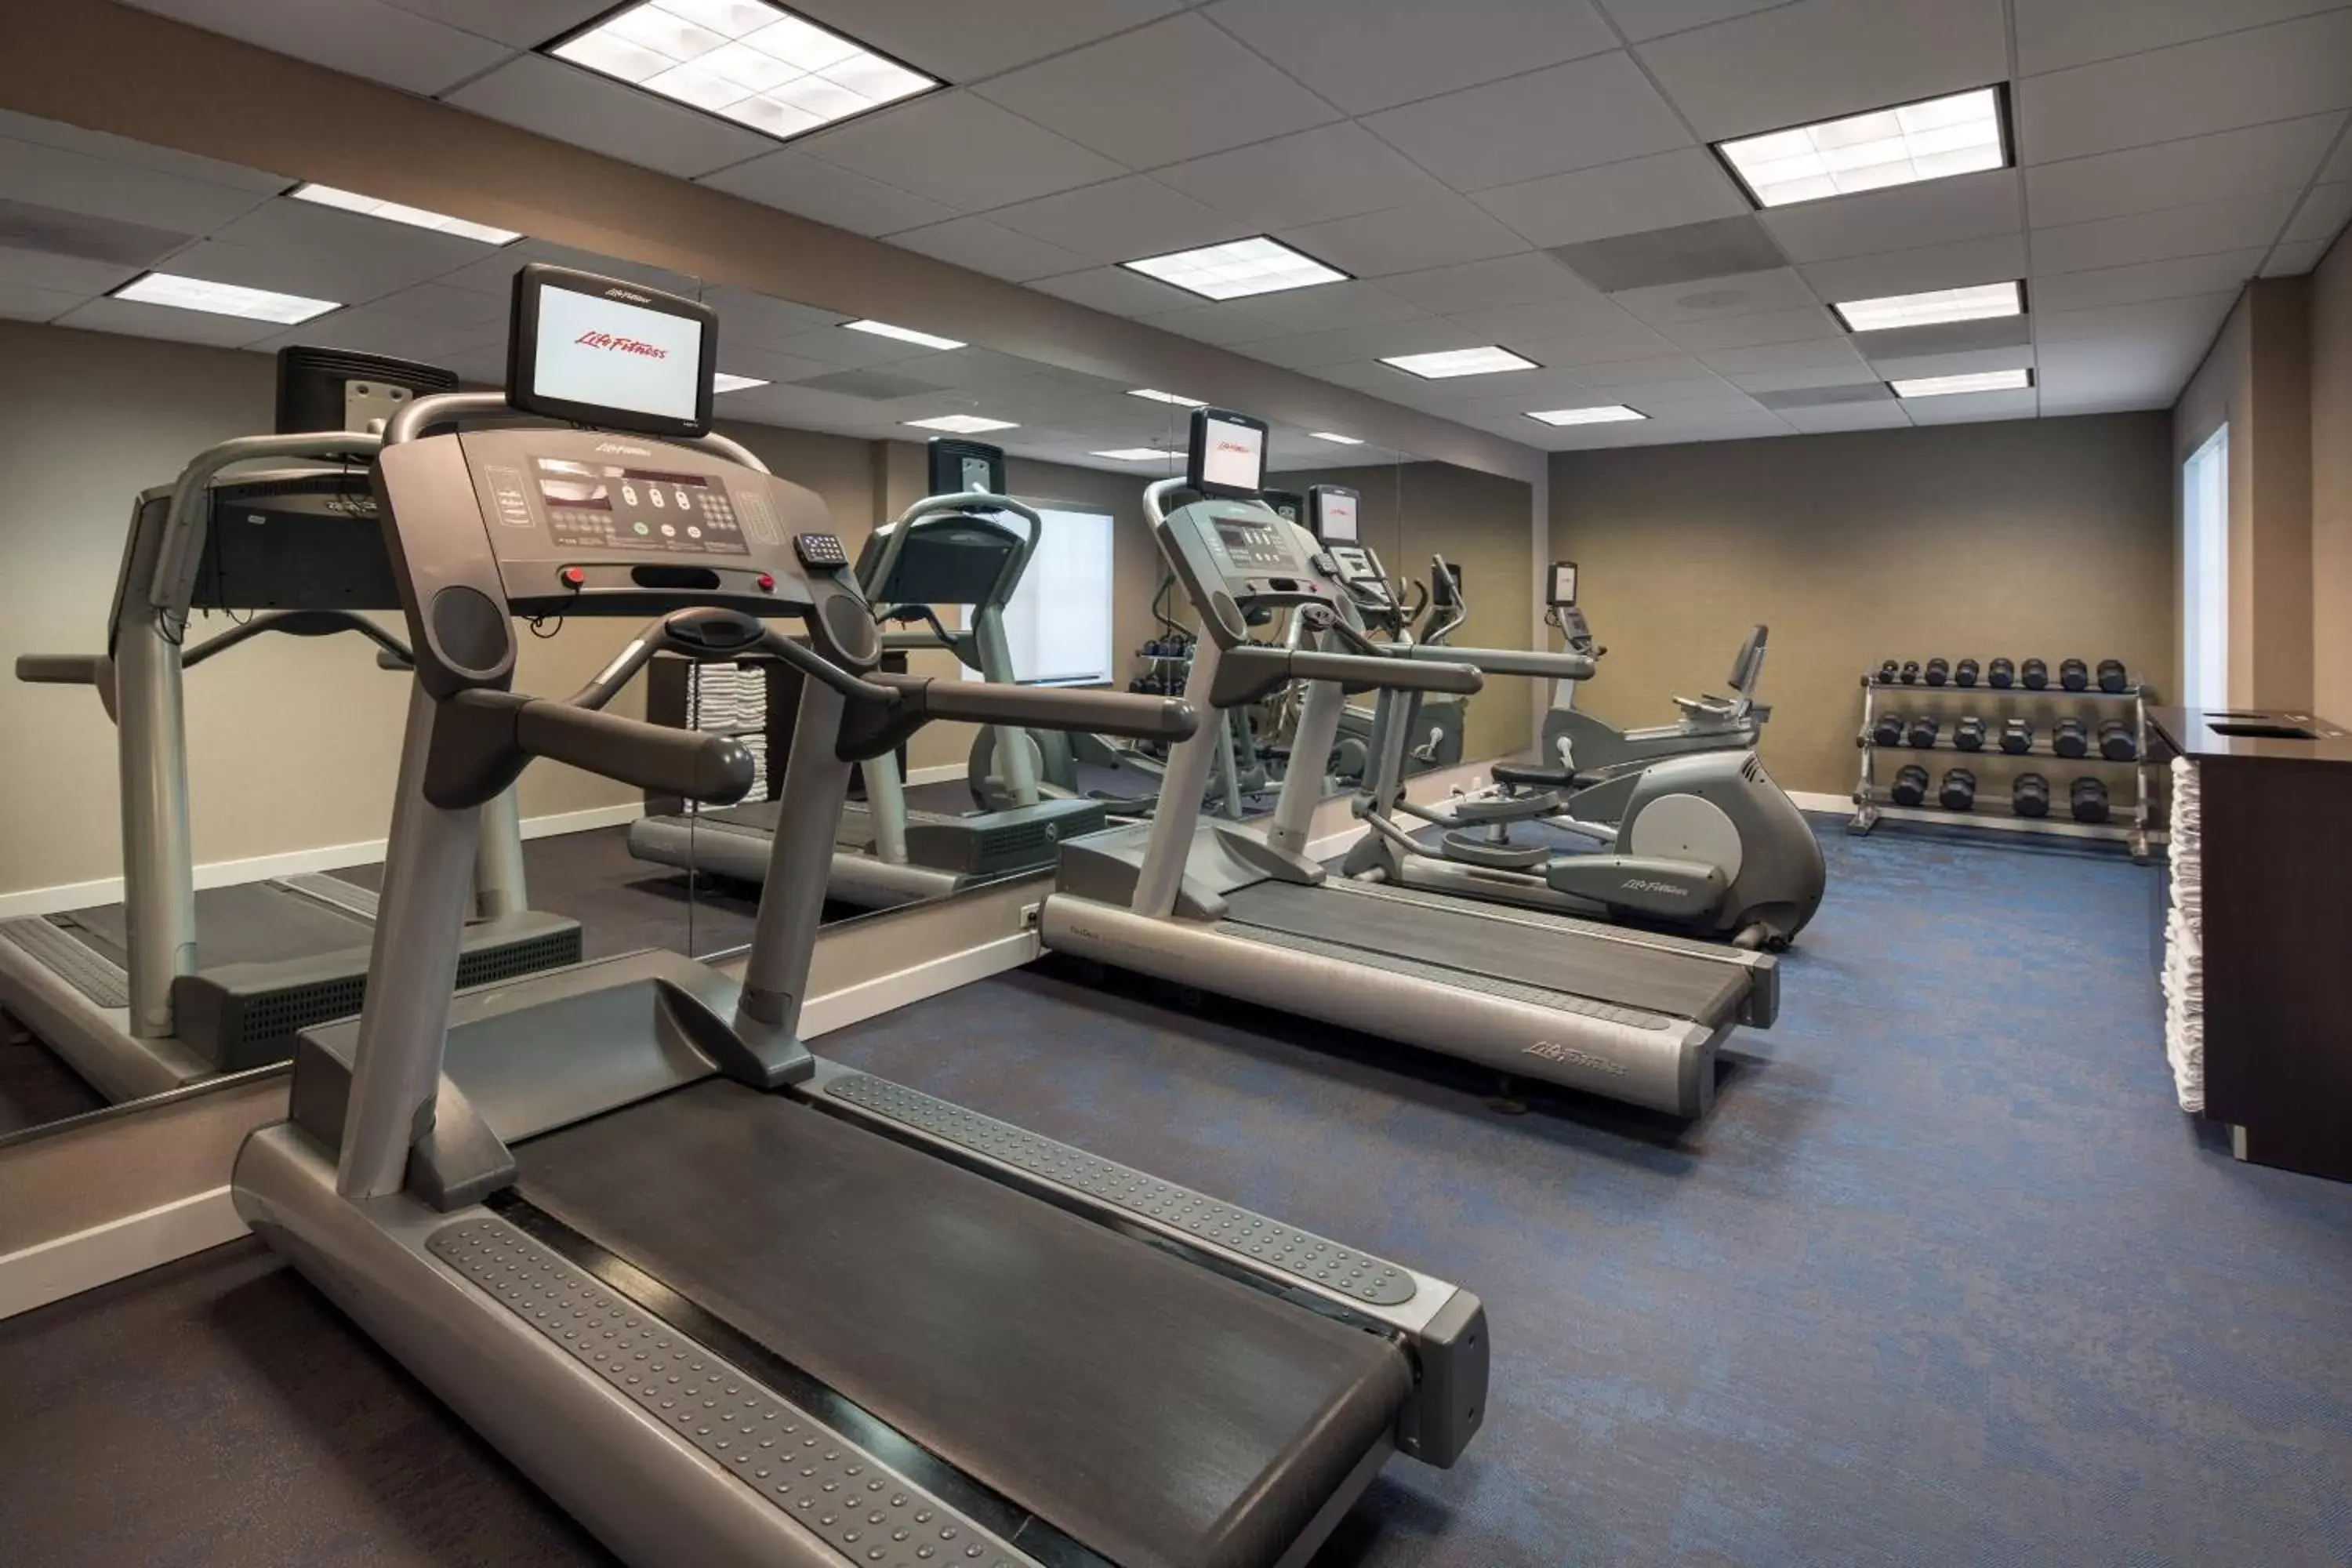 Fitness centre/facilities, Fitness Center/Facilities in Residence Inn by Marriott Camarillo